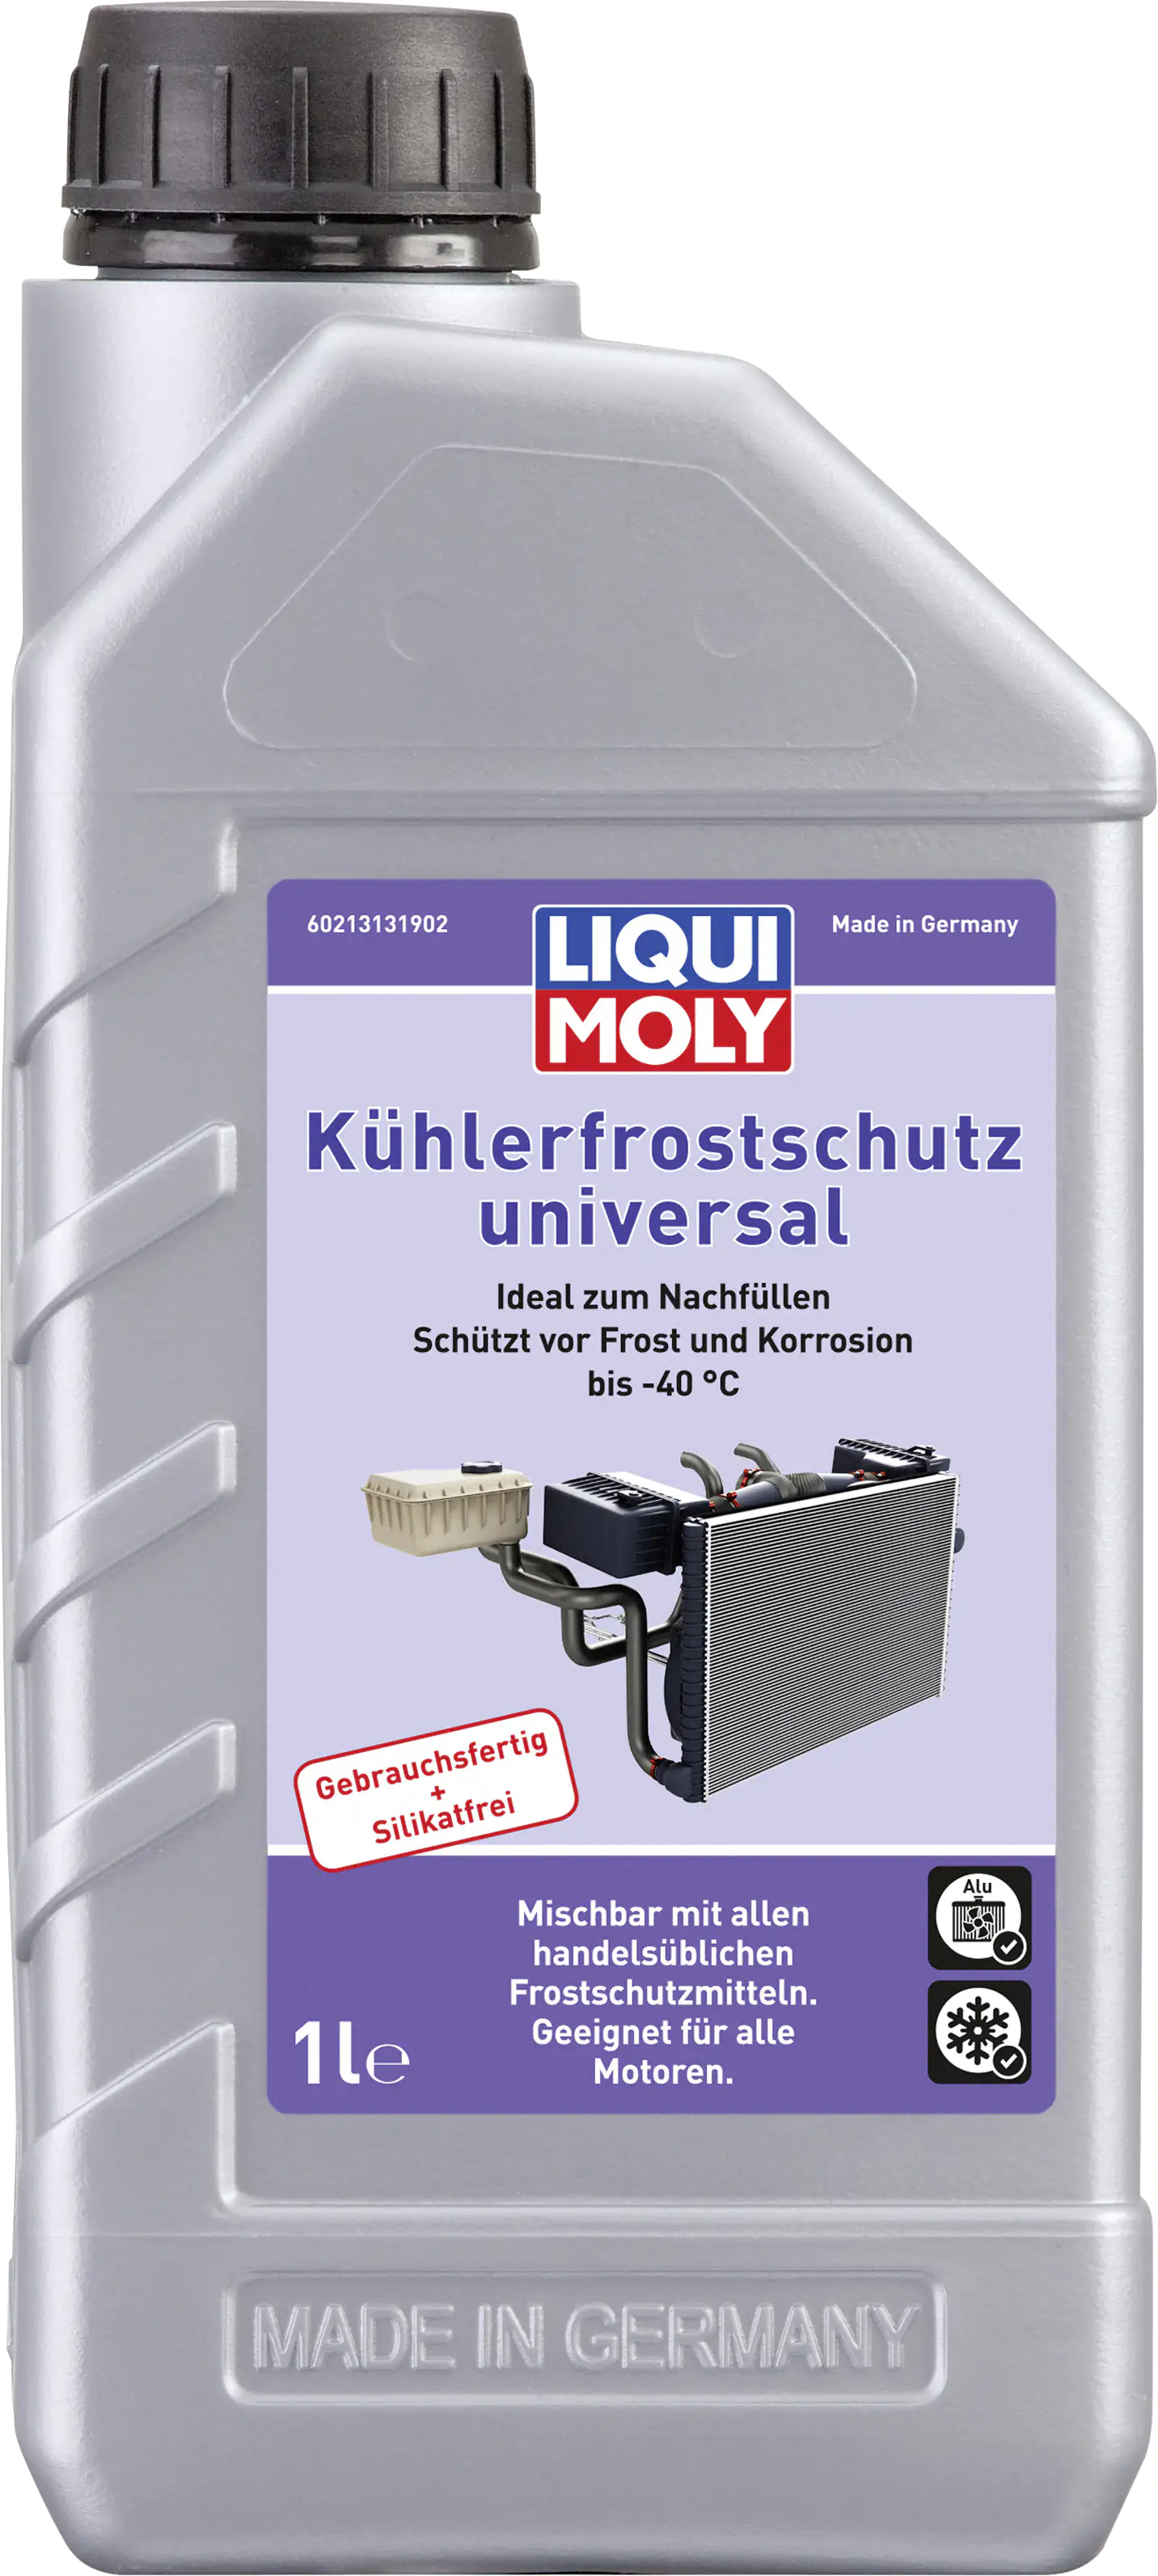 LIQUI MOLY - Kühlerfrostschutz KFS 12++